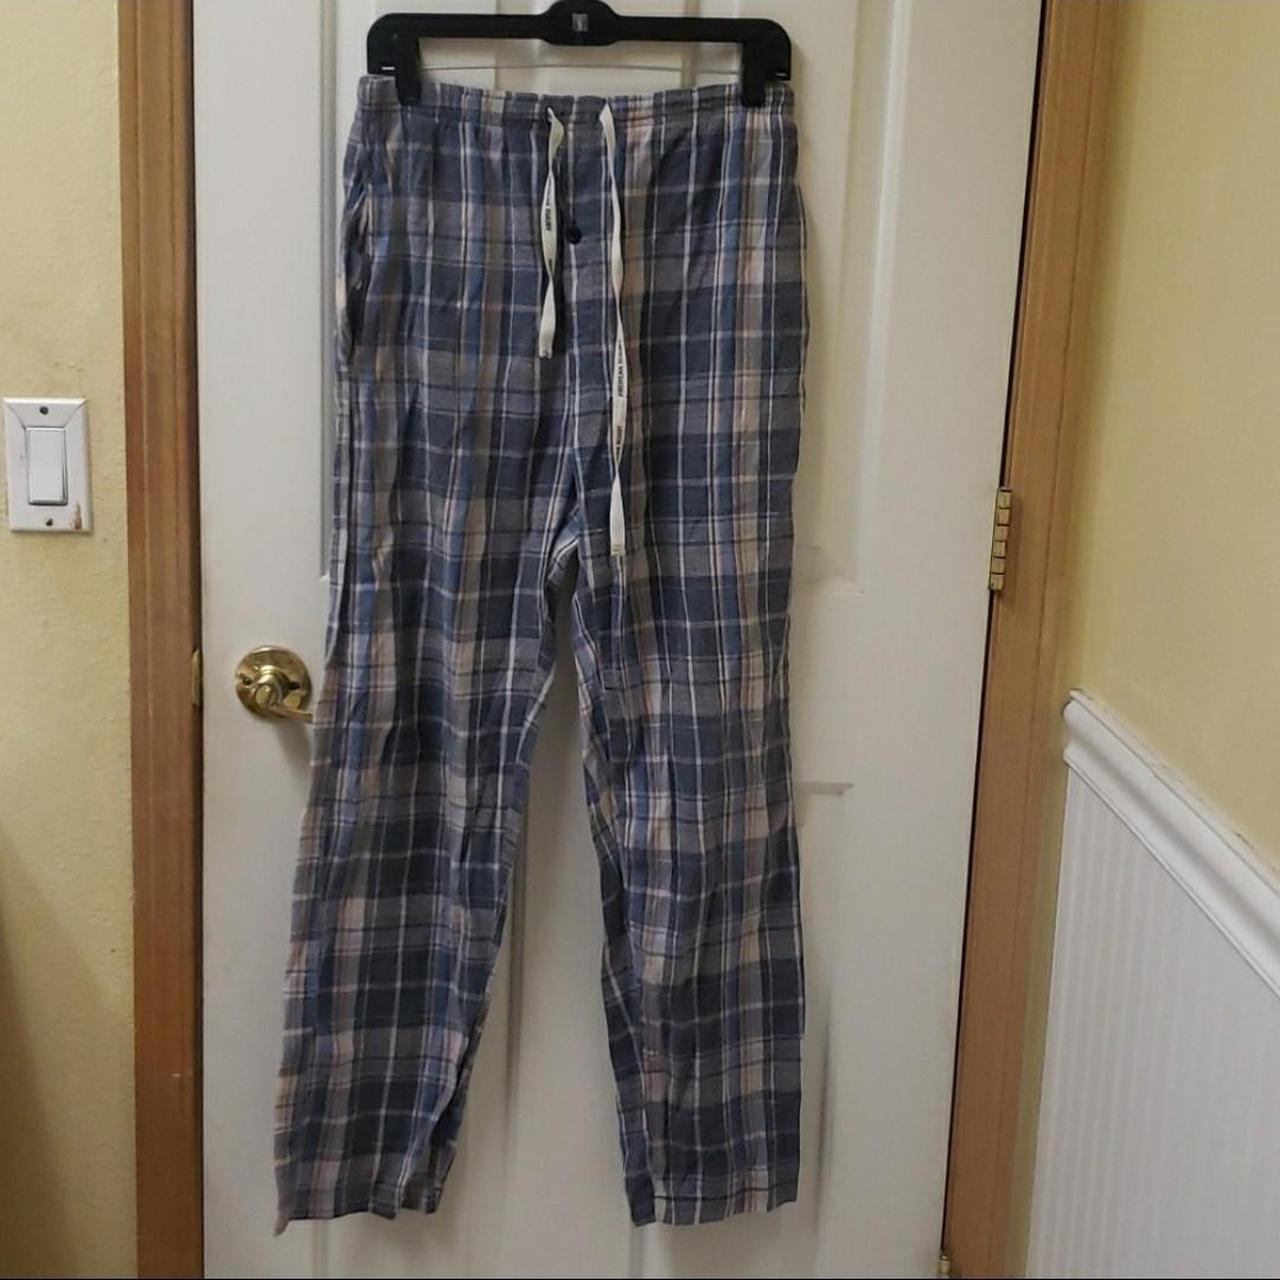 American Rugby pajama pants medium plaid lounge pants - Depop